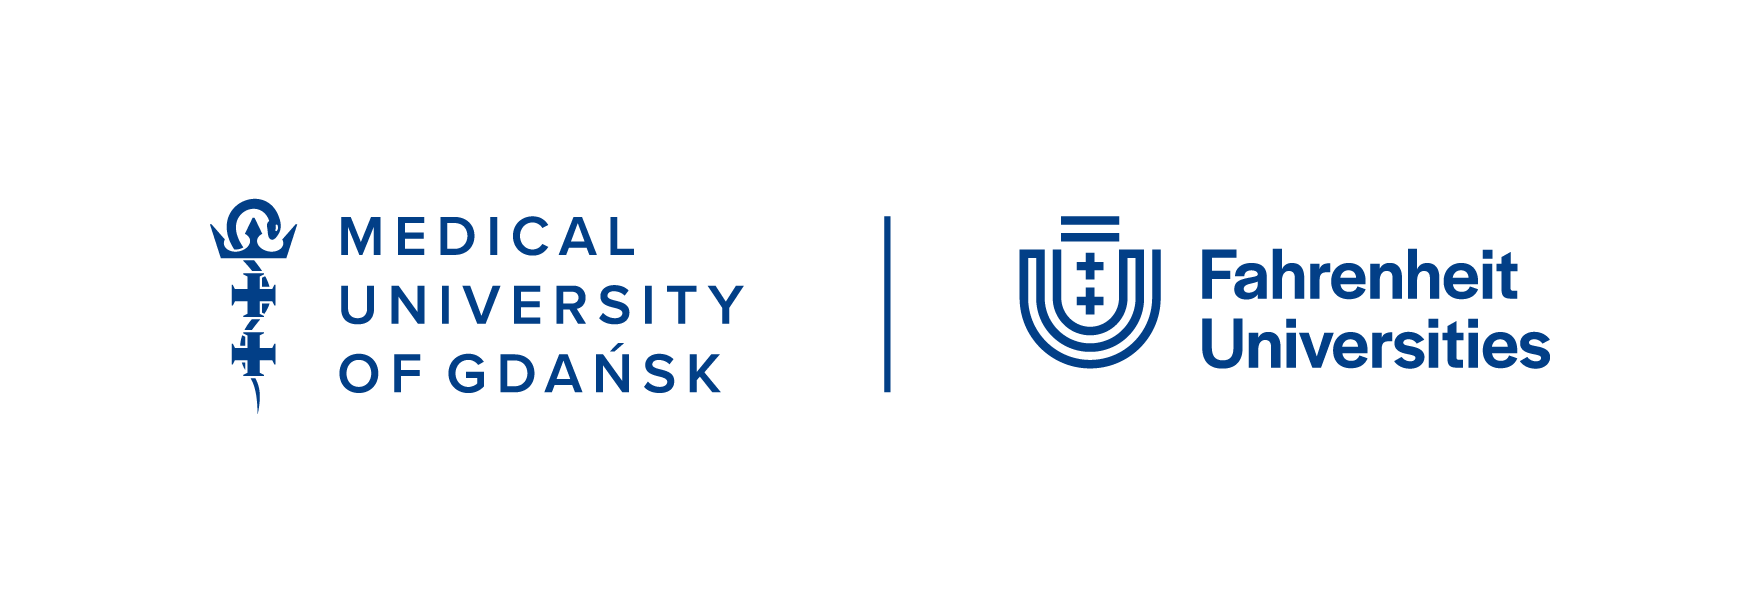 Logotyp Gdański Uniwersytet Medyczny oraz Logotyp Związek Uczelni Fahrenheita